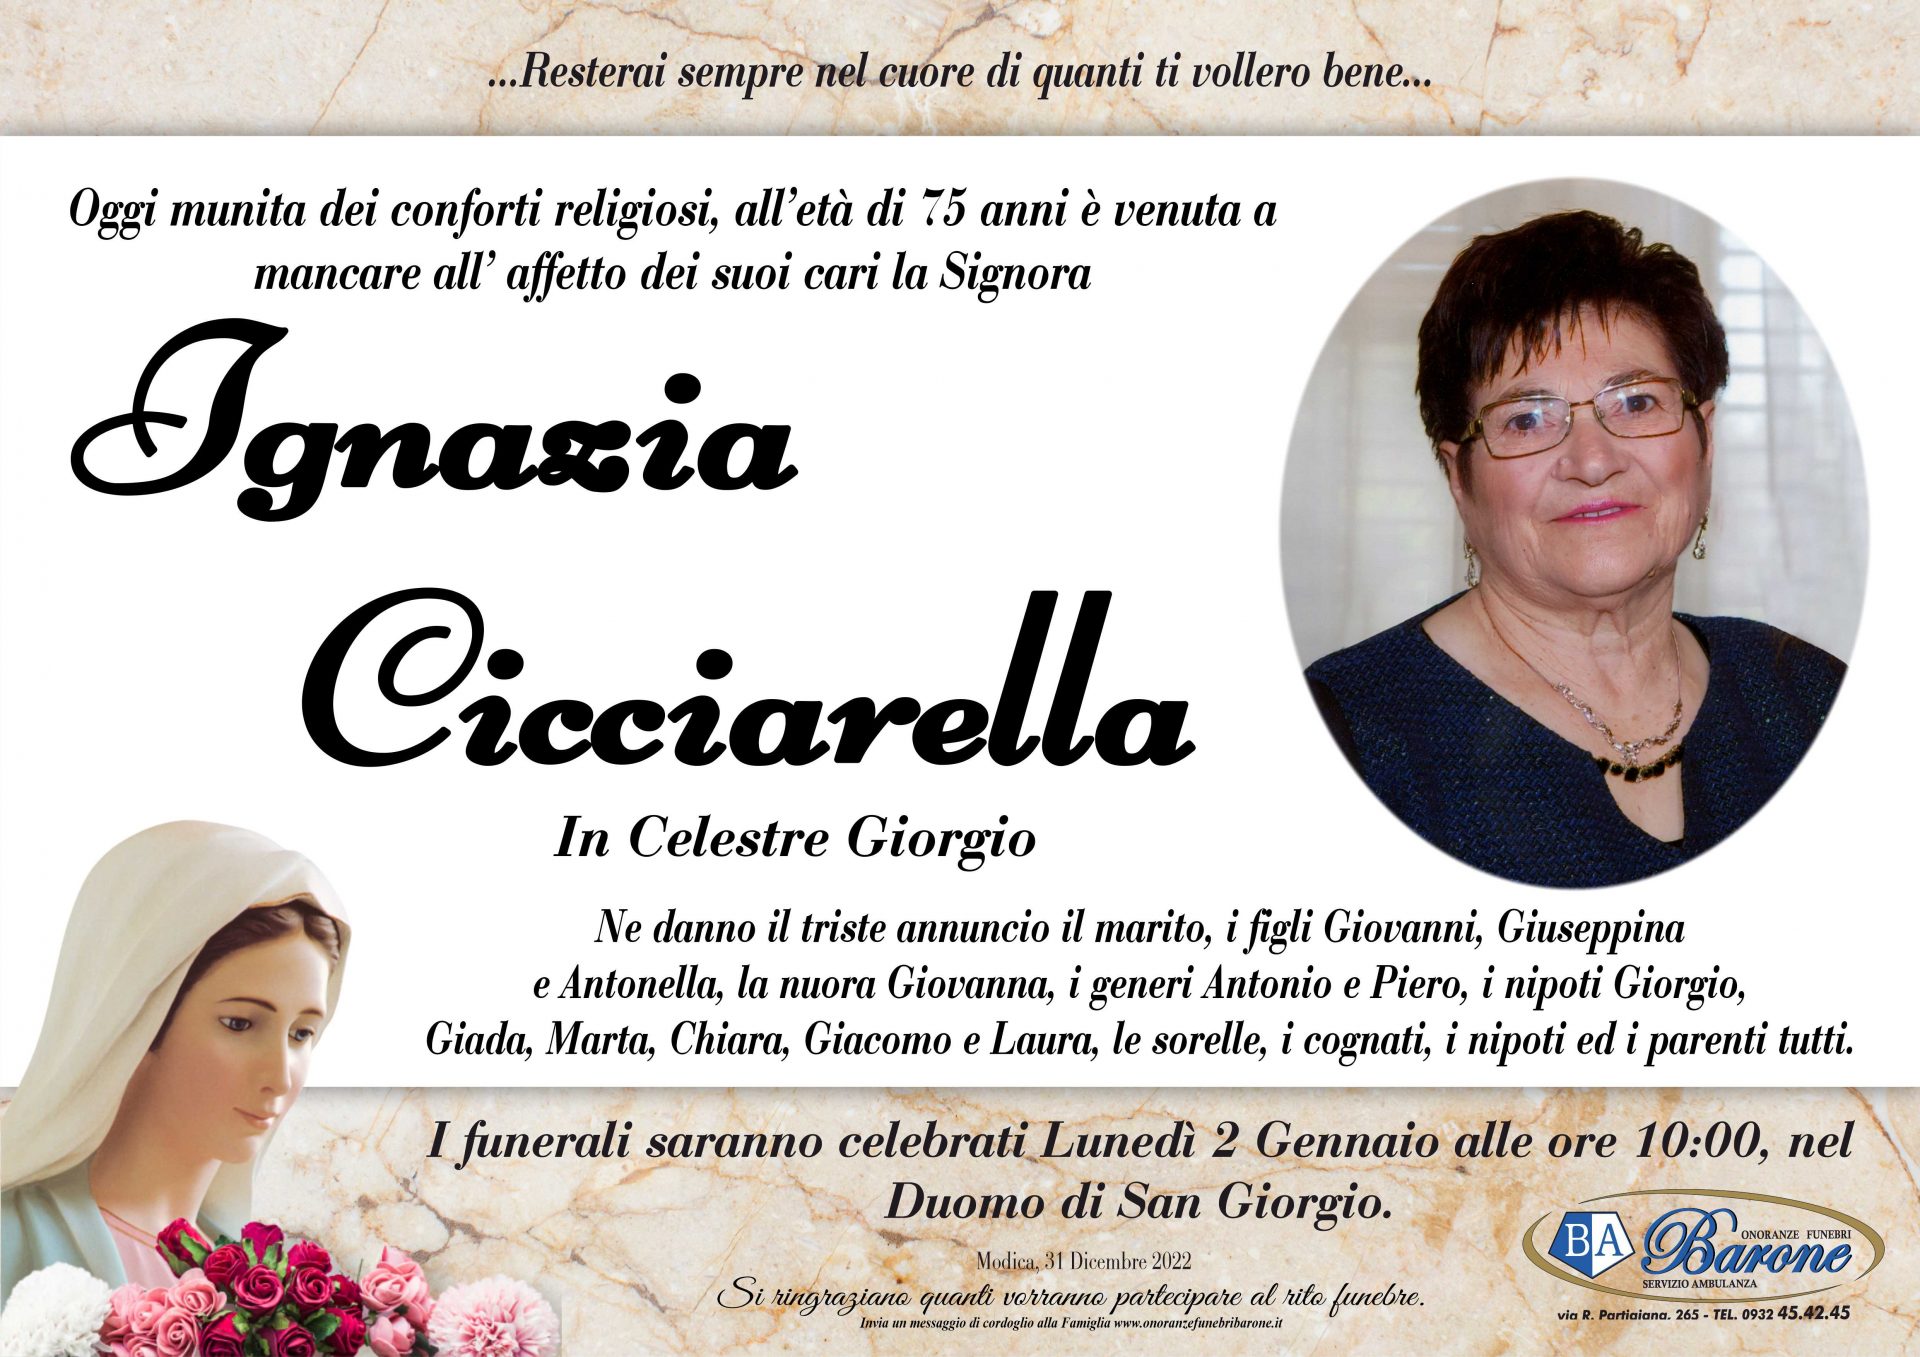 Ignazia Cicciarella